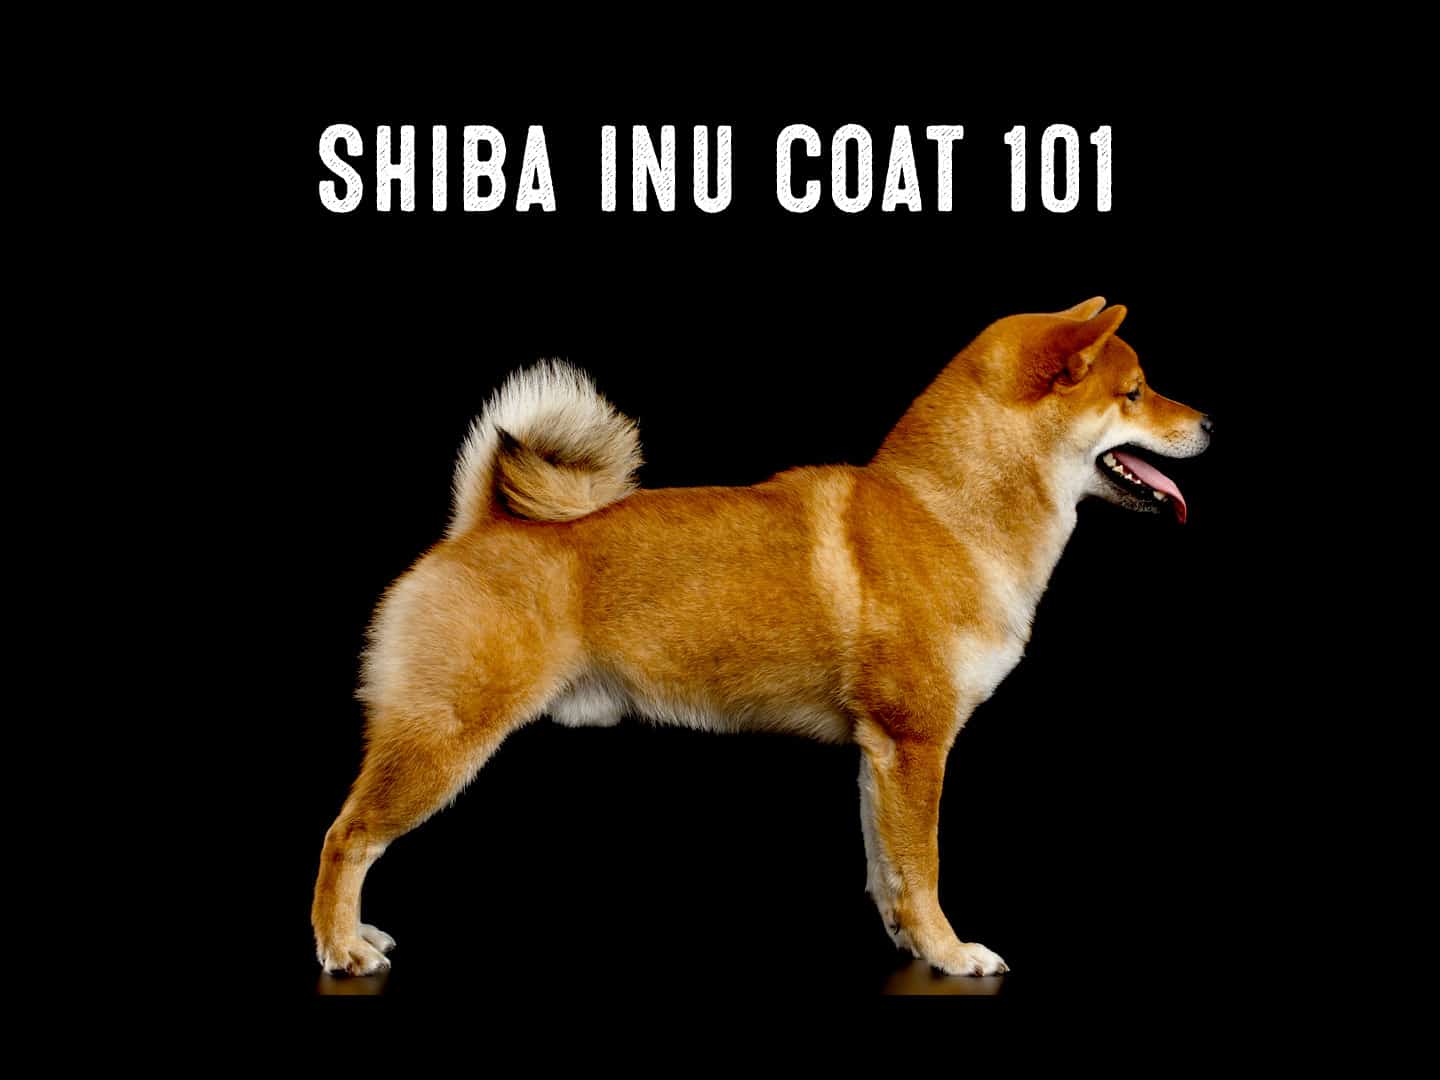 Shiba Inu Coats 101 My First Shiba Inu